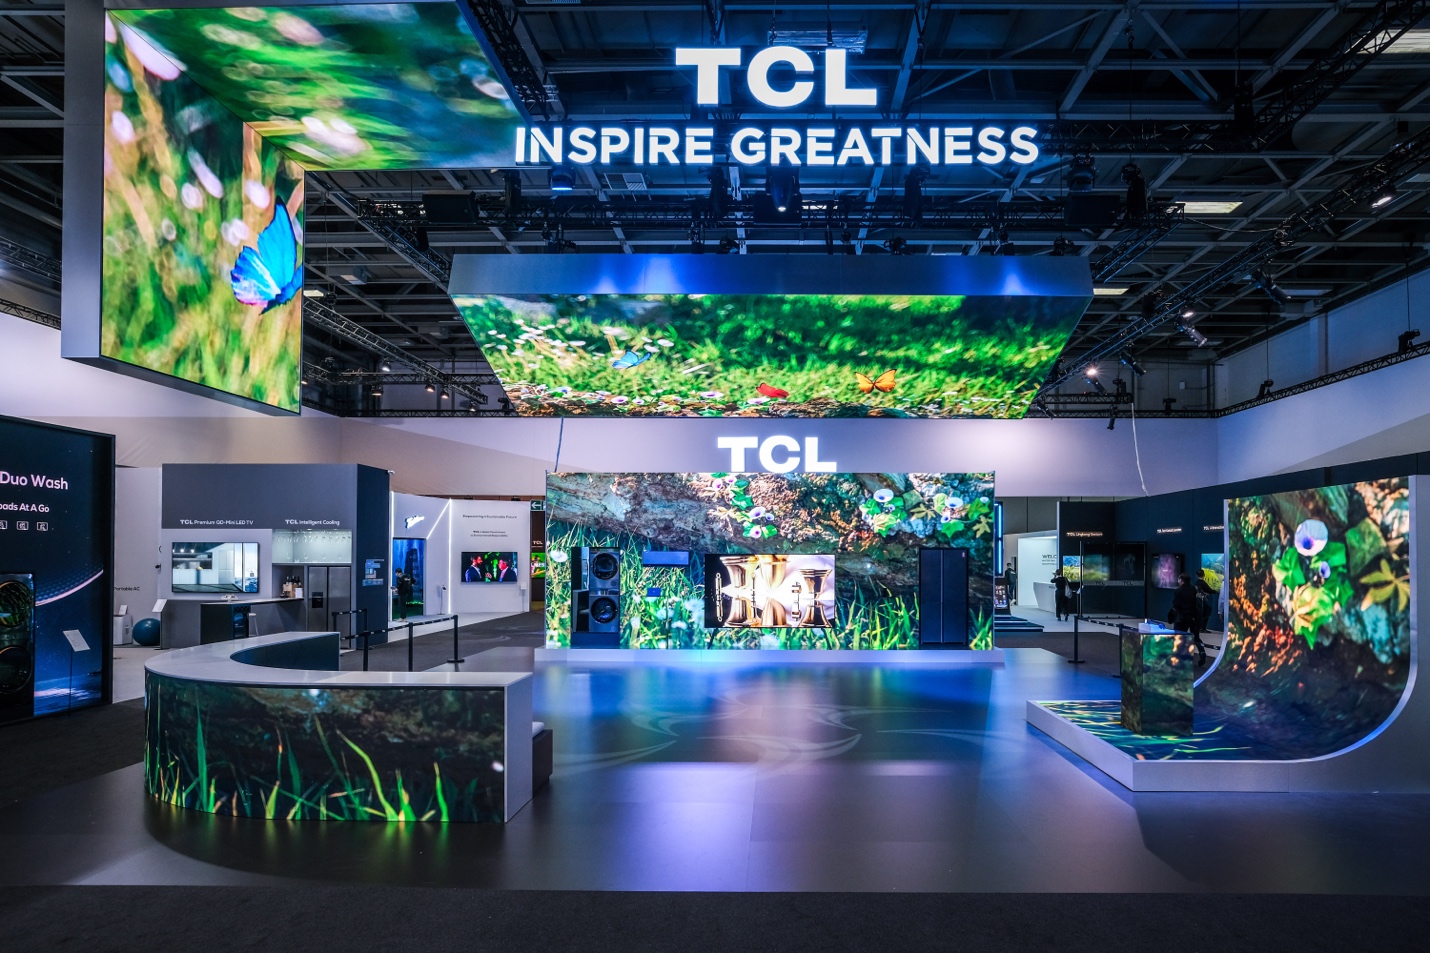 TCL đạt 3 giải thưởng danh giá, củng cố vị trí trong ngành công nghệ - Ảnh 6.